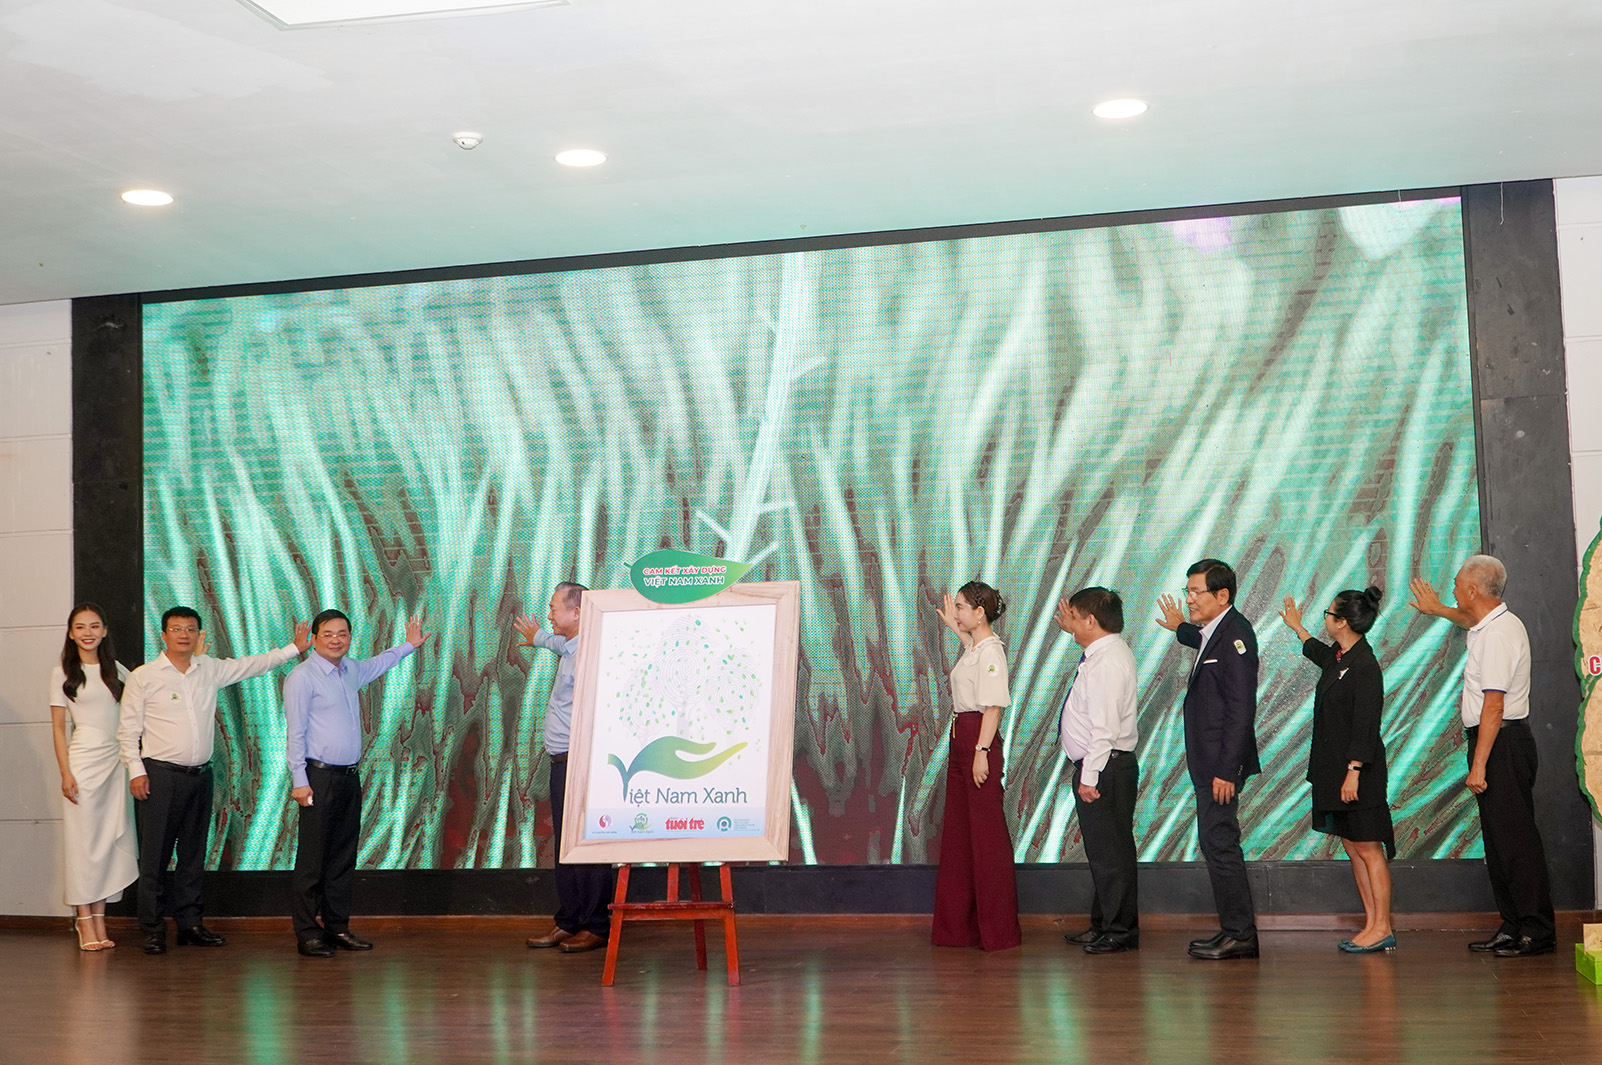 Ngay trước hội thảo, Báo Tuổi trẻ phối hợp với Cục Biến đổi khí hậu và Liên minh Tái chế bao bì Việt Nam công bố dự án Việt Nam Xanh nhằm nâng cao nhận thức cộng đồng về giảm phát thải, bảo vệ môi trường.